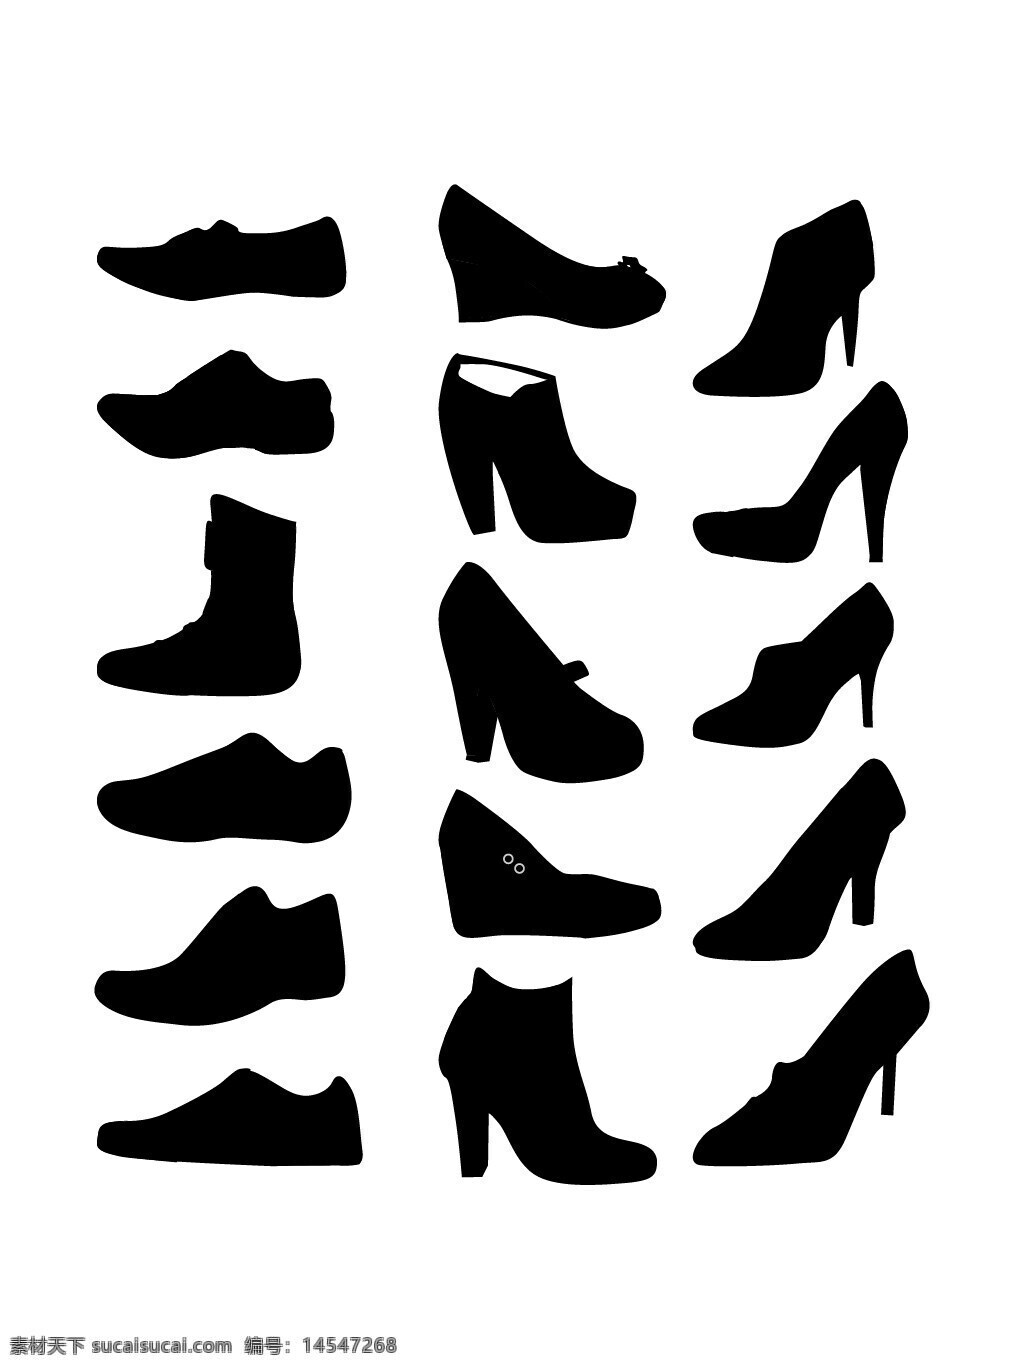 鞋子剪影 矢量鞋子 女性 服饰 高跟鞋 靴子 凉鞋 女鞋 剪影 矢量素材